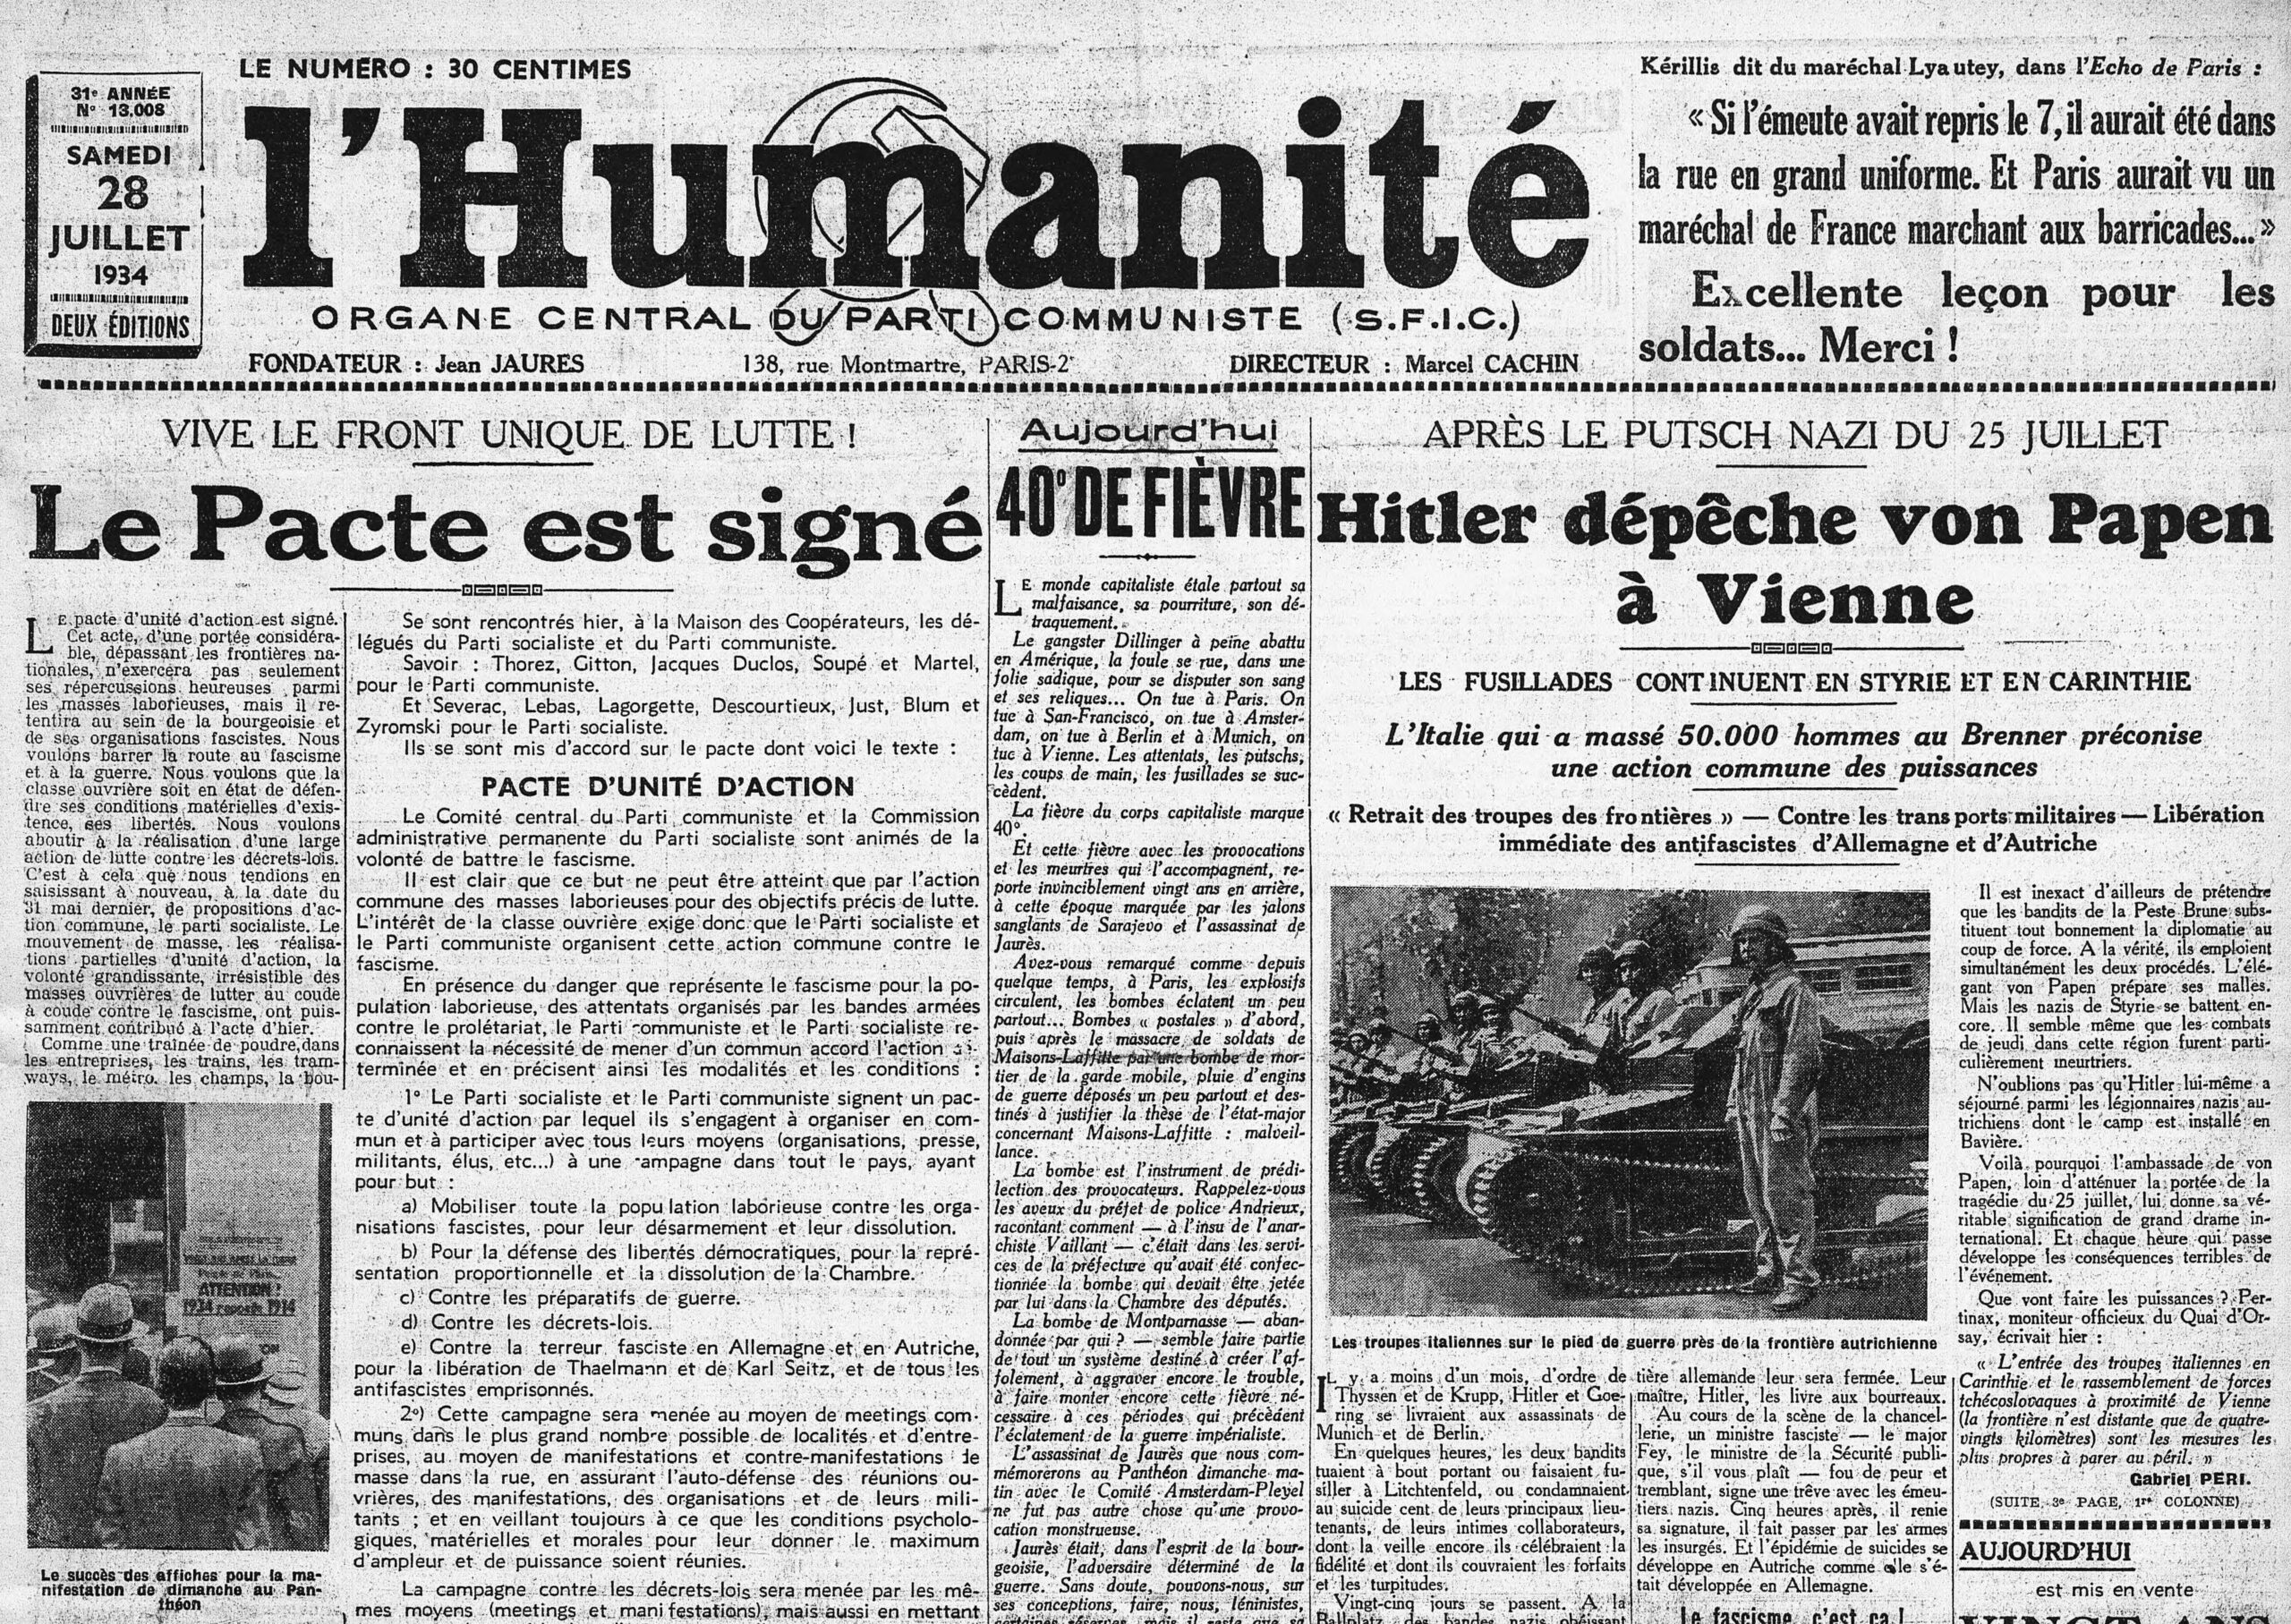 27 juillet 1934: du front unique au Front populaire, un long processus